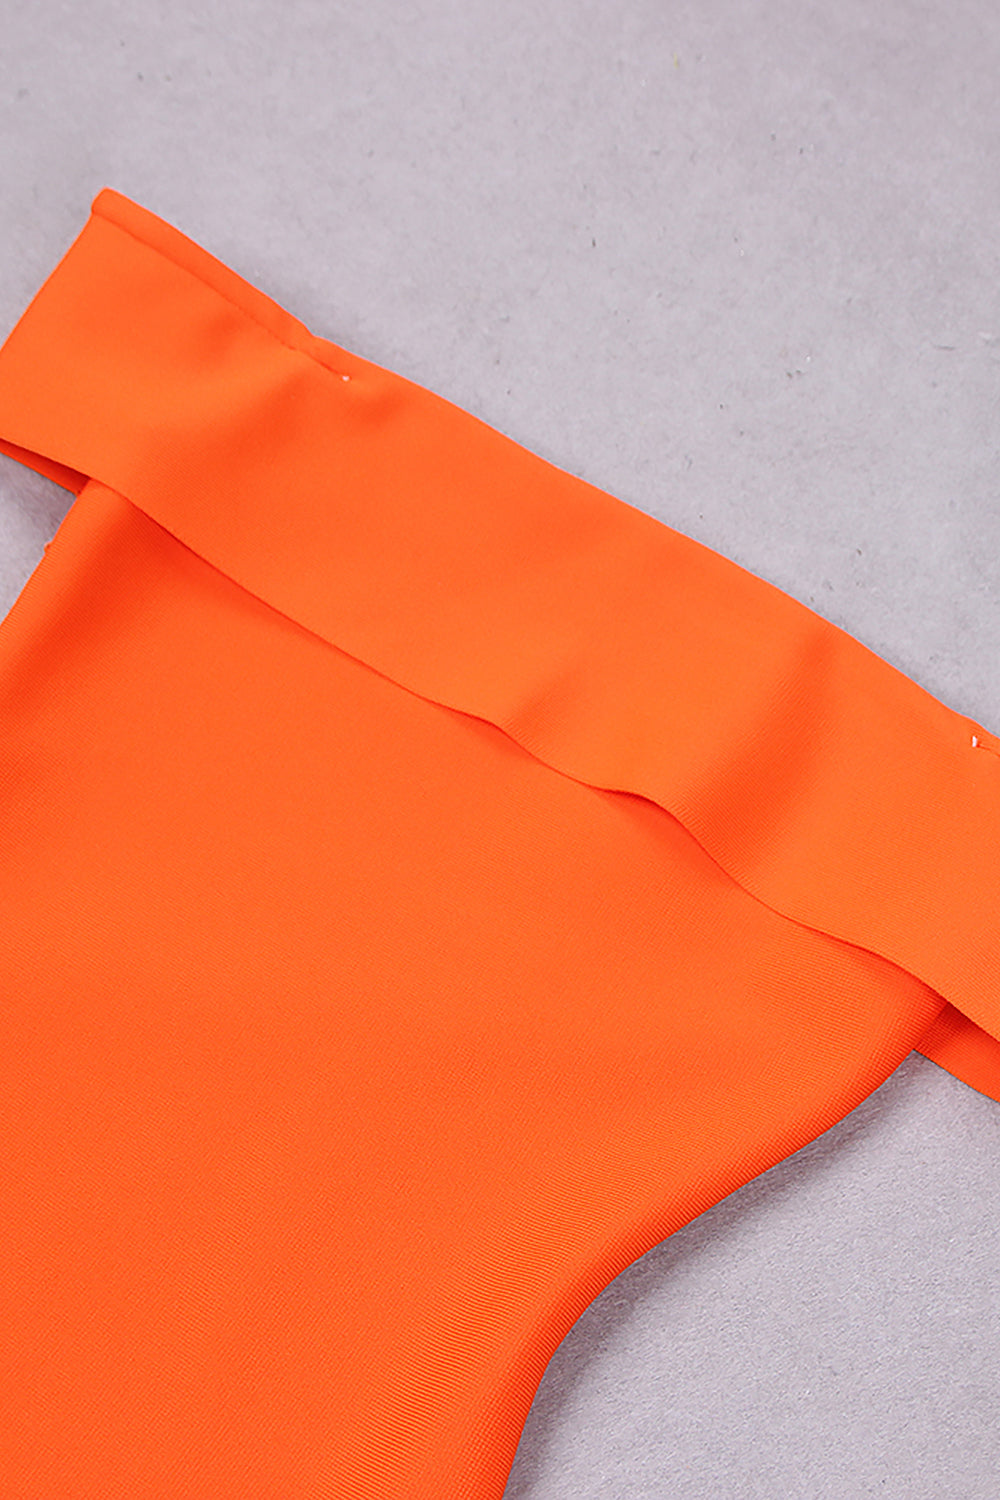 Robe bandage mi-longue sirène sans bretelles à épaules dénudées en orange noir